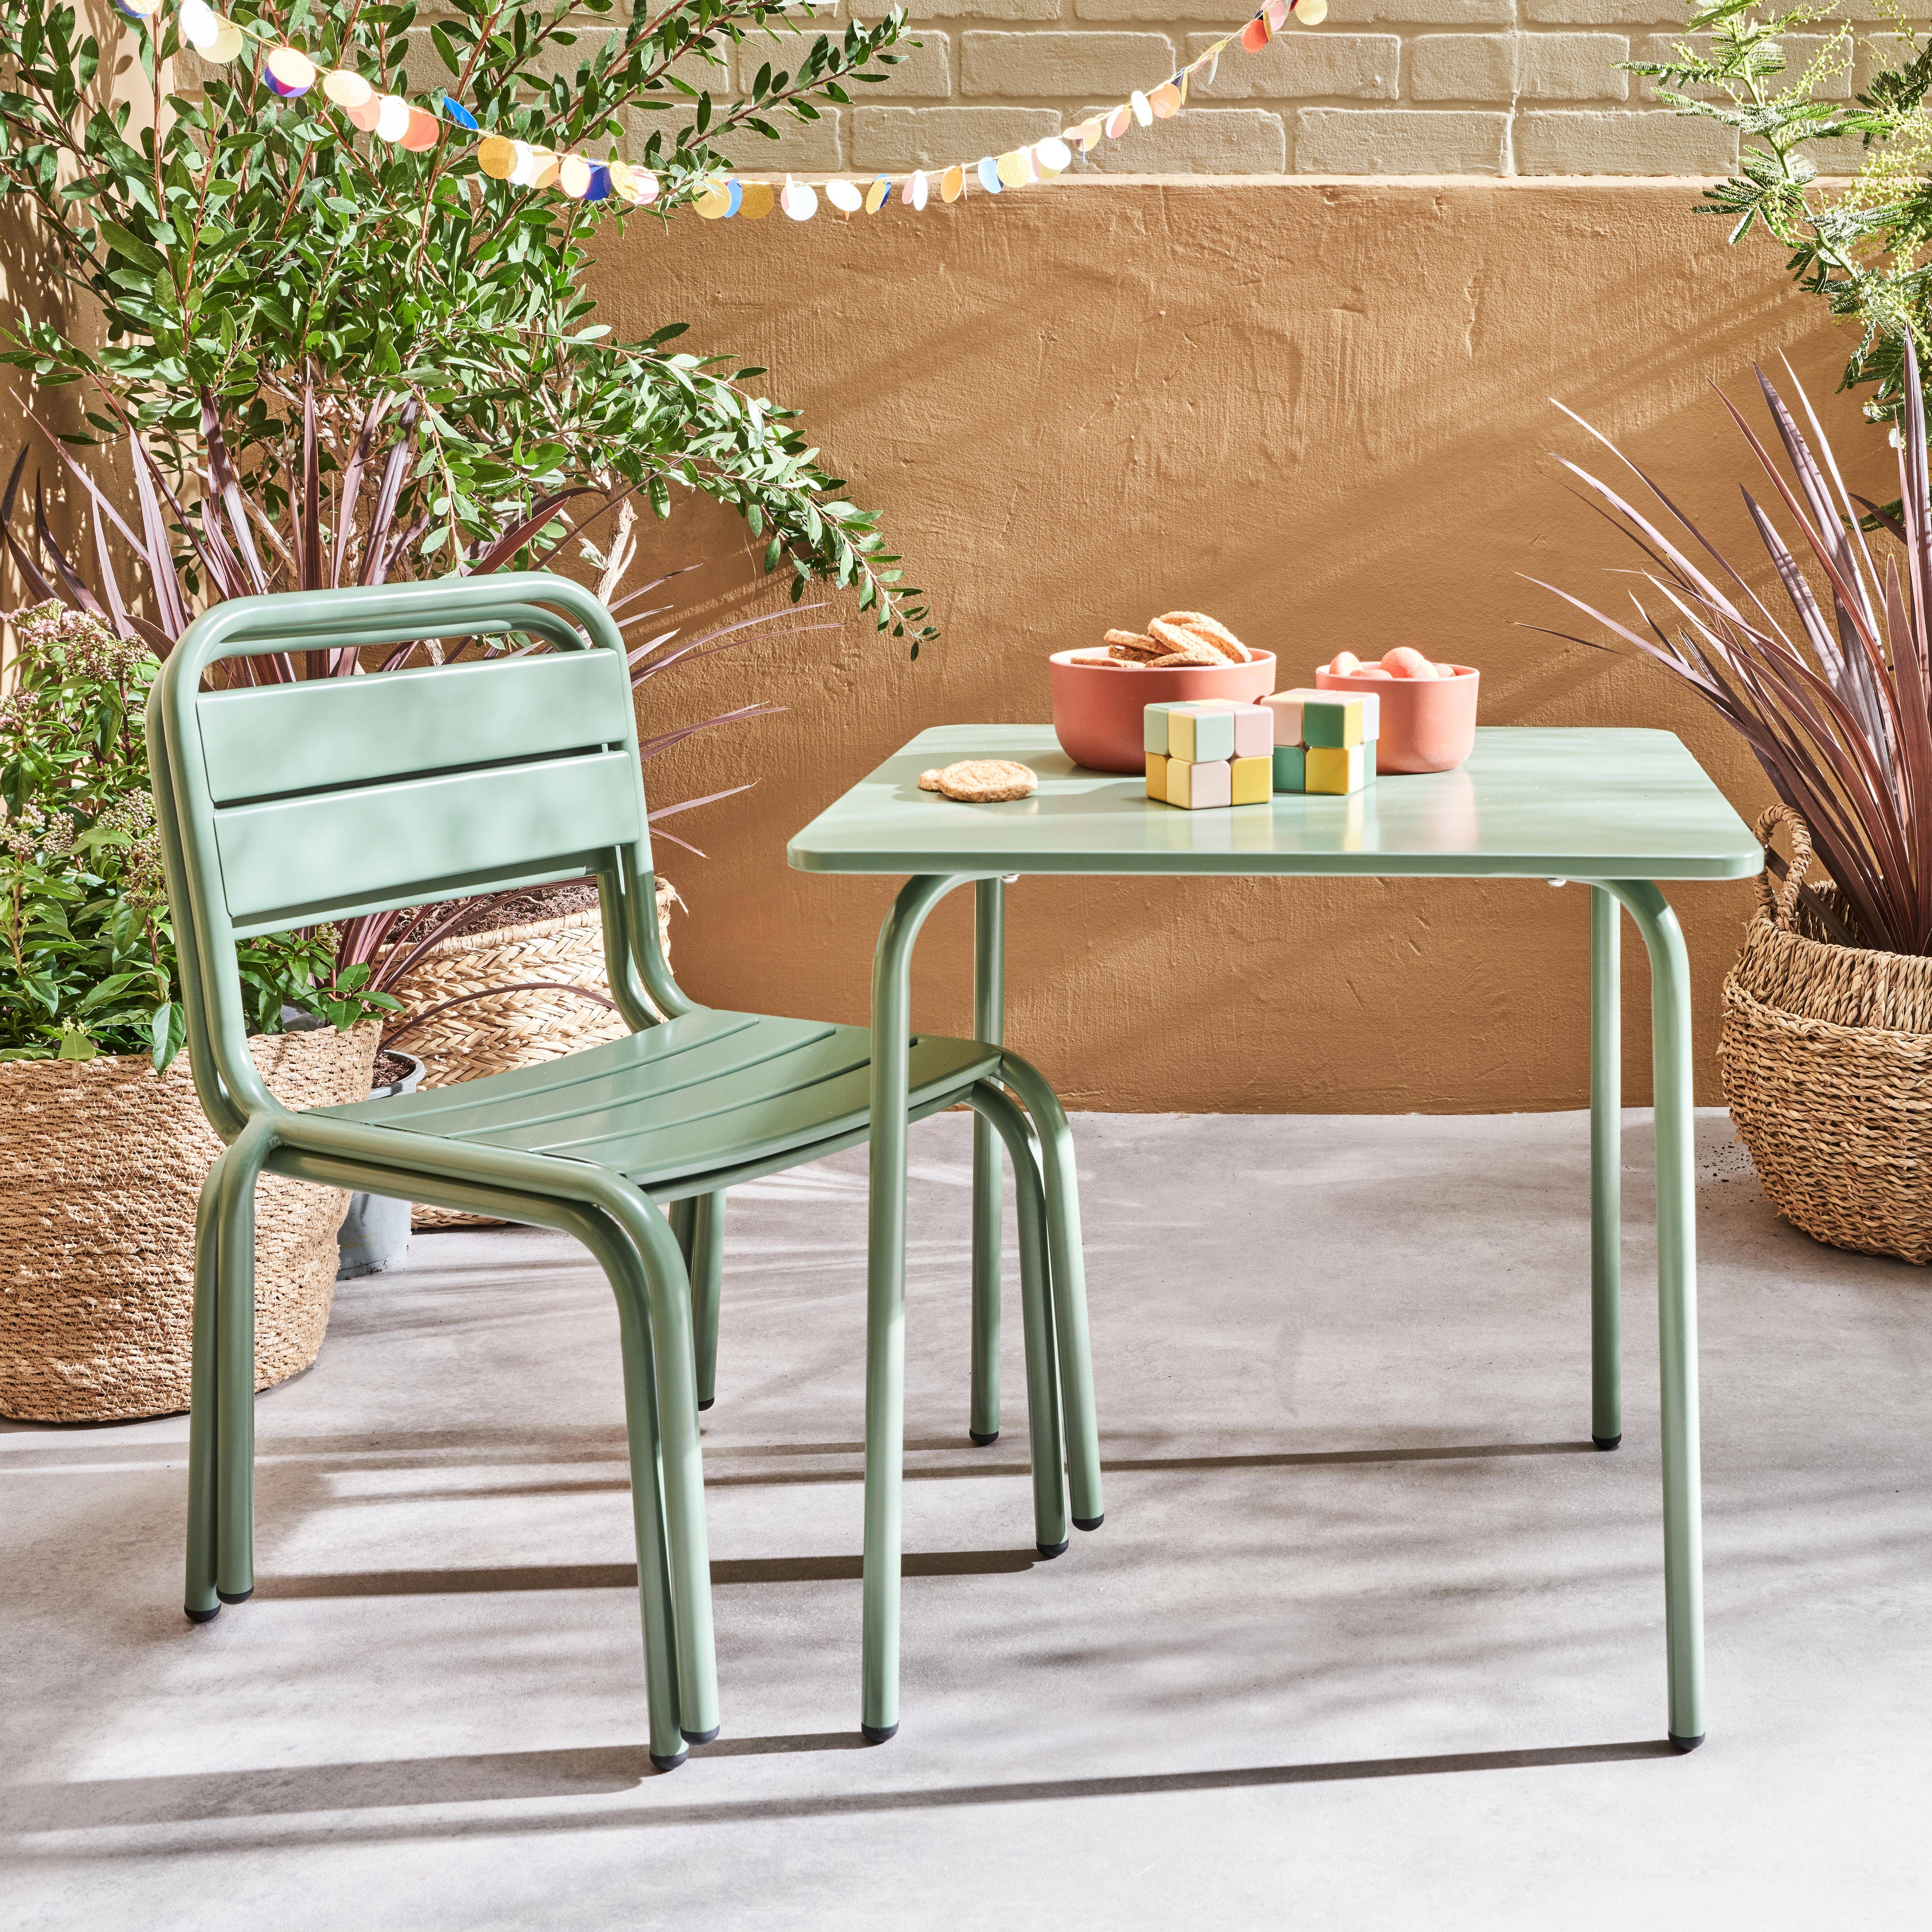 Tisch 48x48cm und 2 Stühle für Kinder, graugrün, 48x48cm, für draußen verwendbar - Anna,sweeek,Photo2